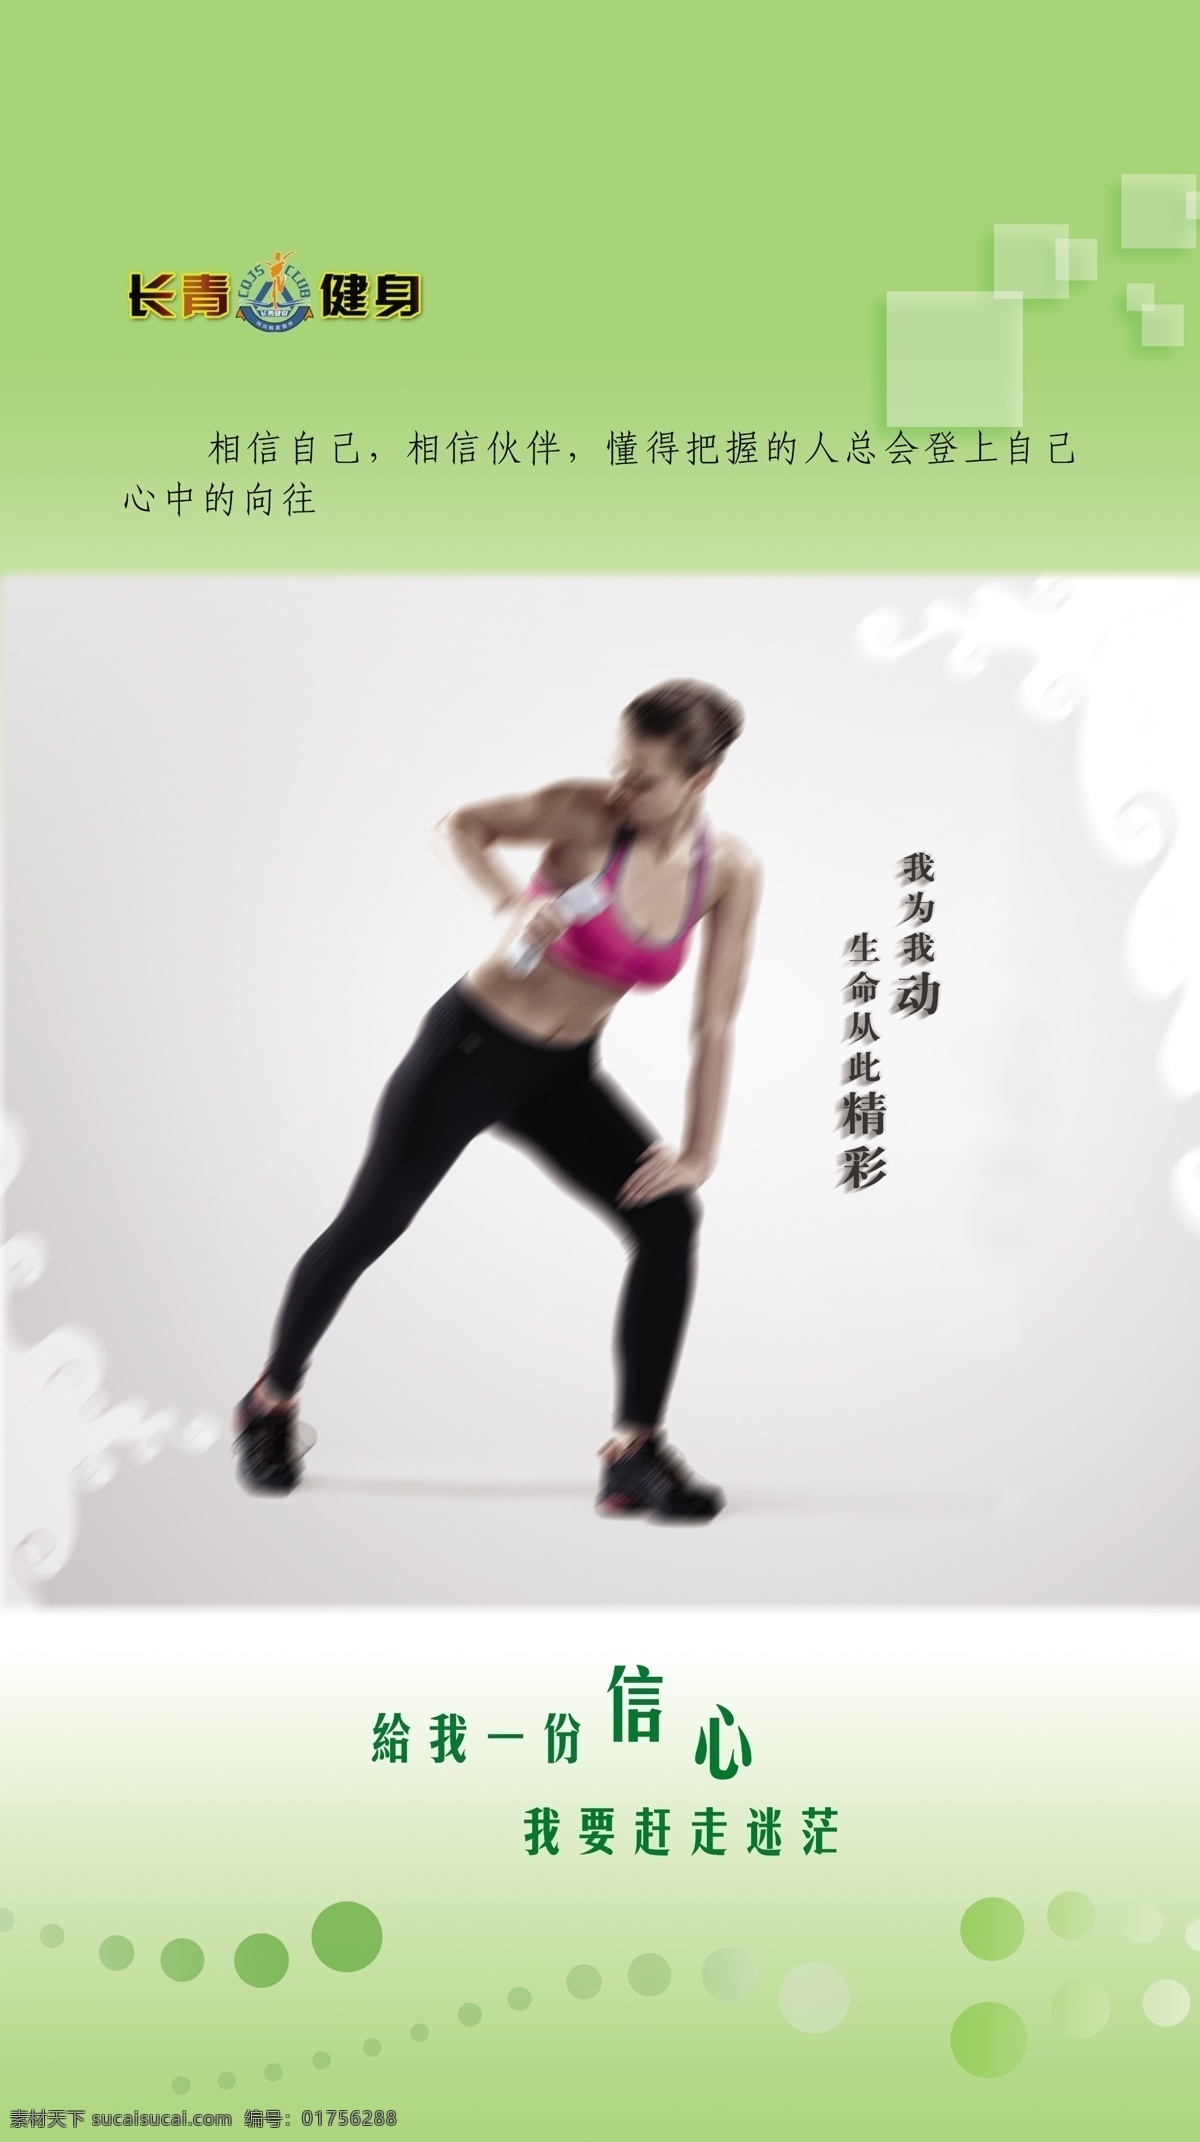 格言 广告设计模板 健身 健身房海报 健身房展板 时尚元素 源文件 瑜伽运动展板 瑜伽运动 展板模板 其他海报设计